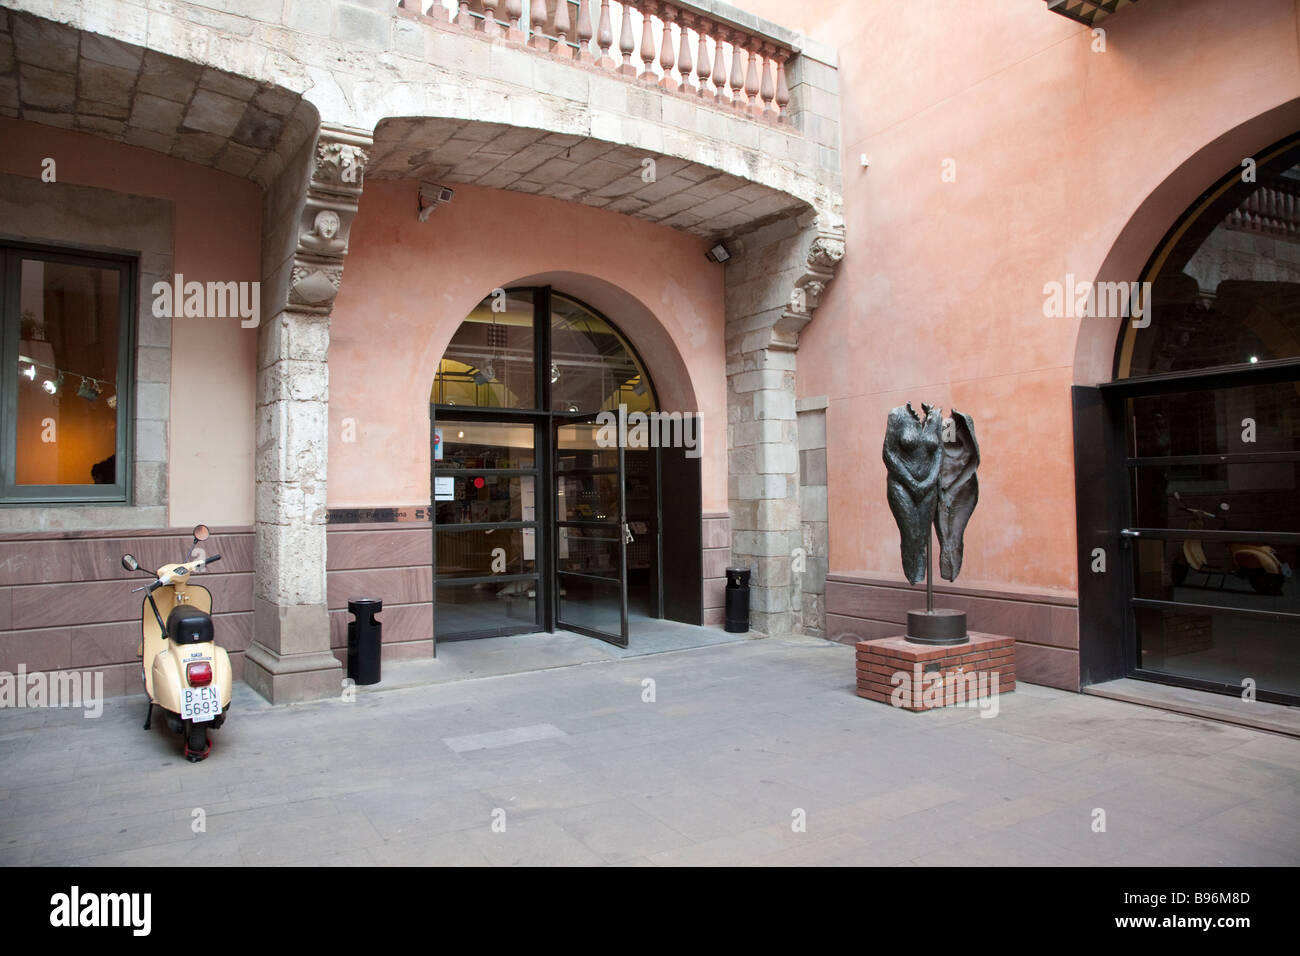 Centre Civic Pati Llimona, Barri Gotic, Barcelona Stock Photo